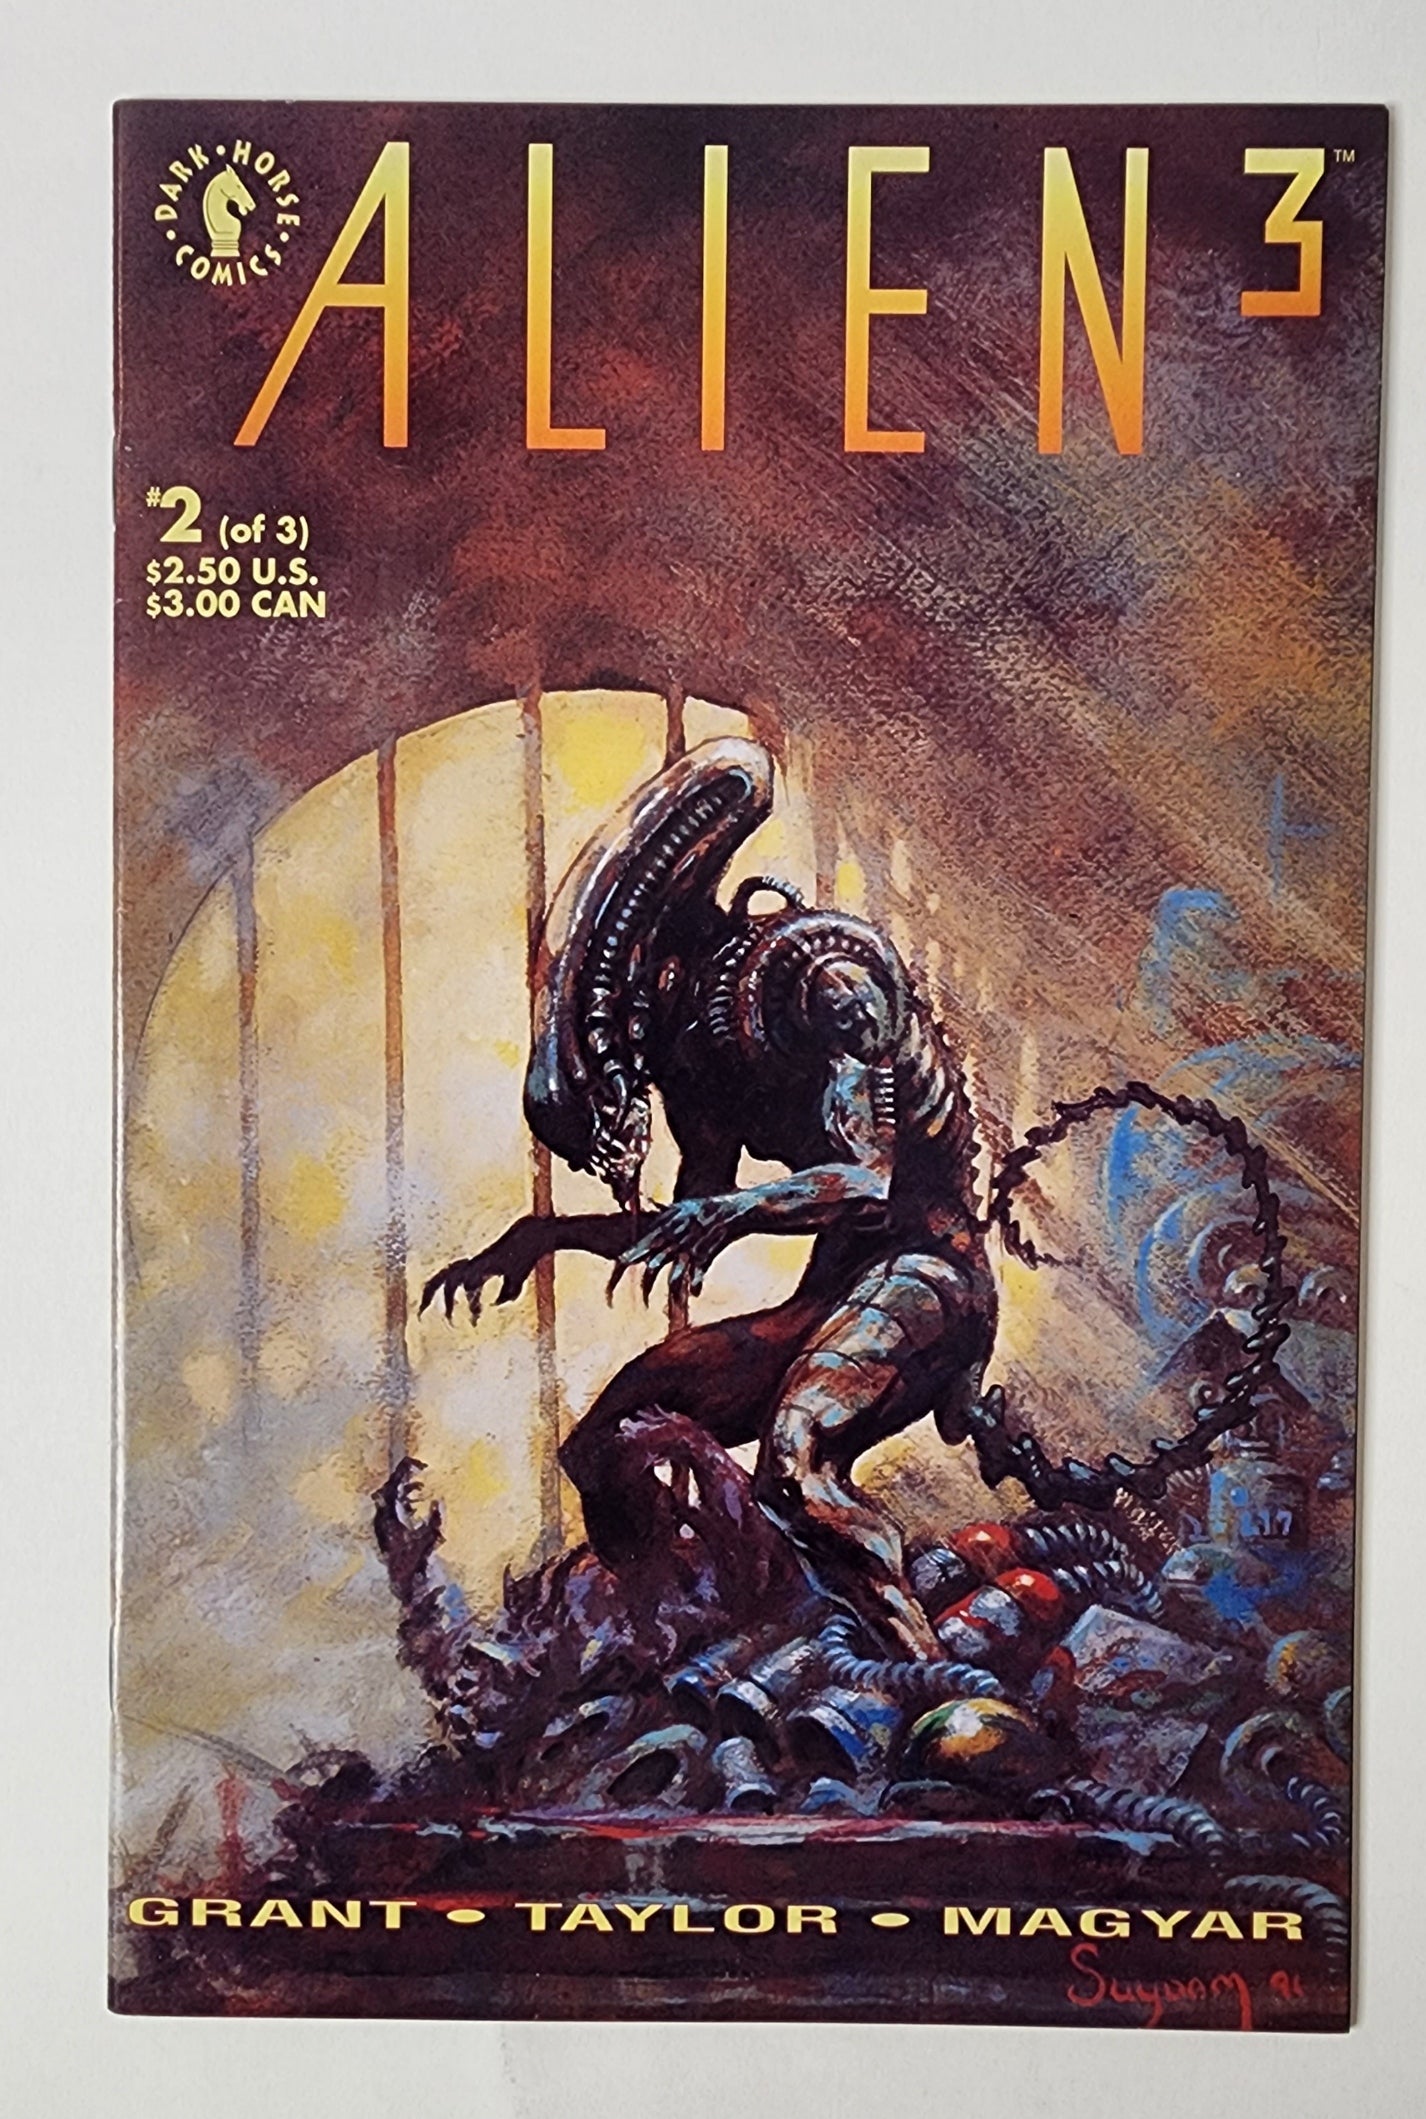 Alien 3 #2 (VF)